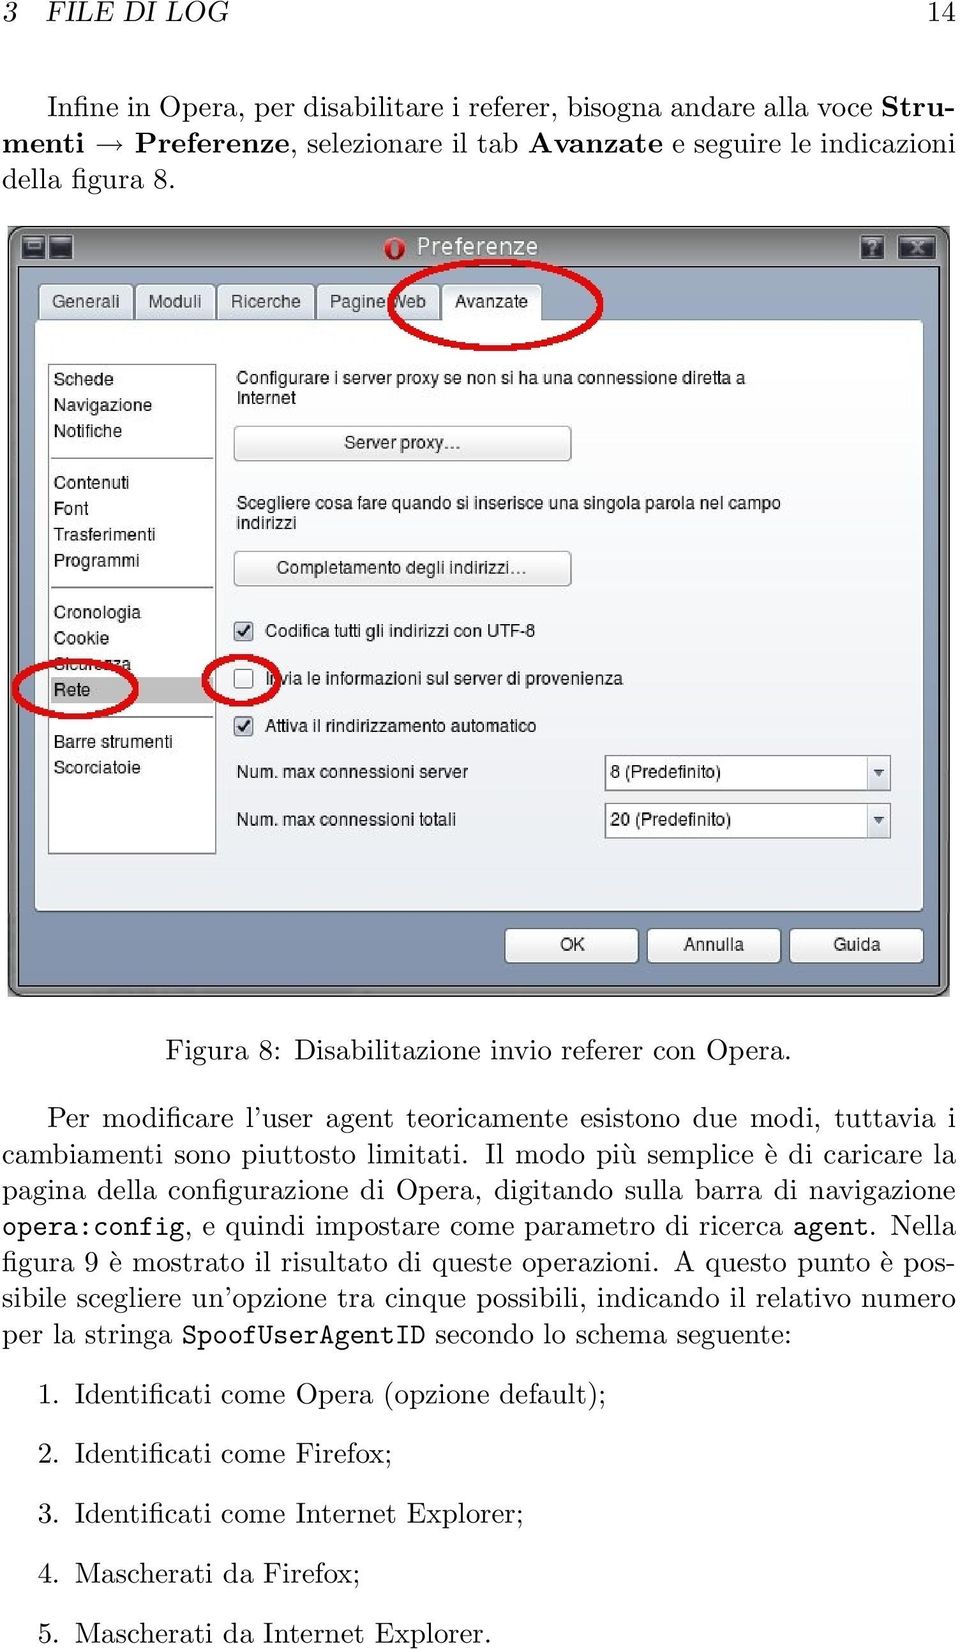 Il modo più semplice è di caricare la pagina della configurazione di Opera, digitando sulla barra di navigazione opera:config, e quindi impostare come parametro di ricerca agent.